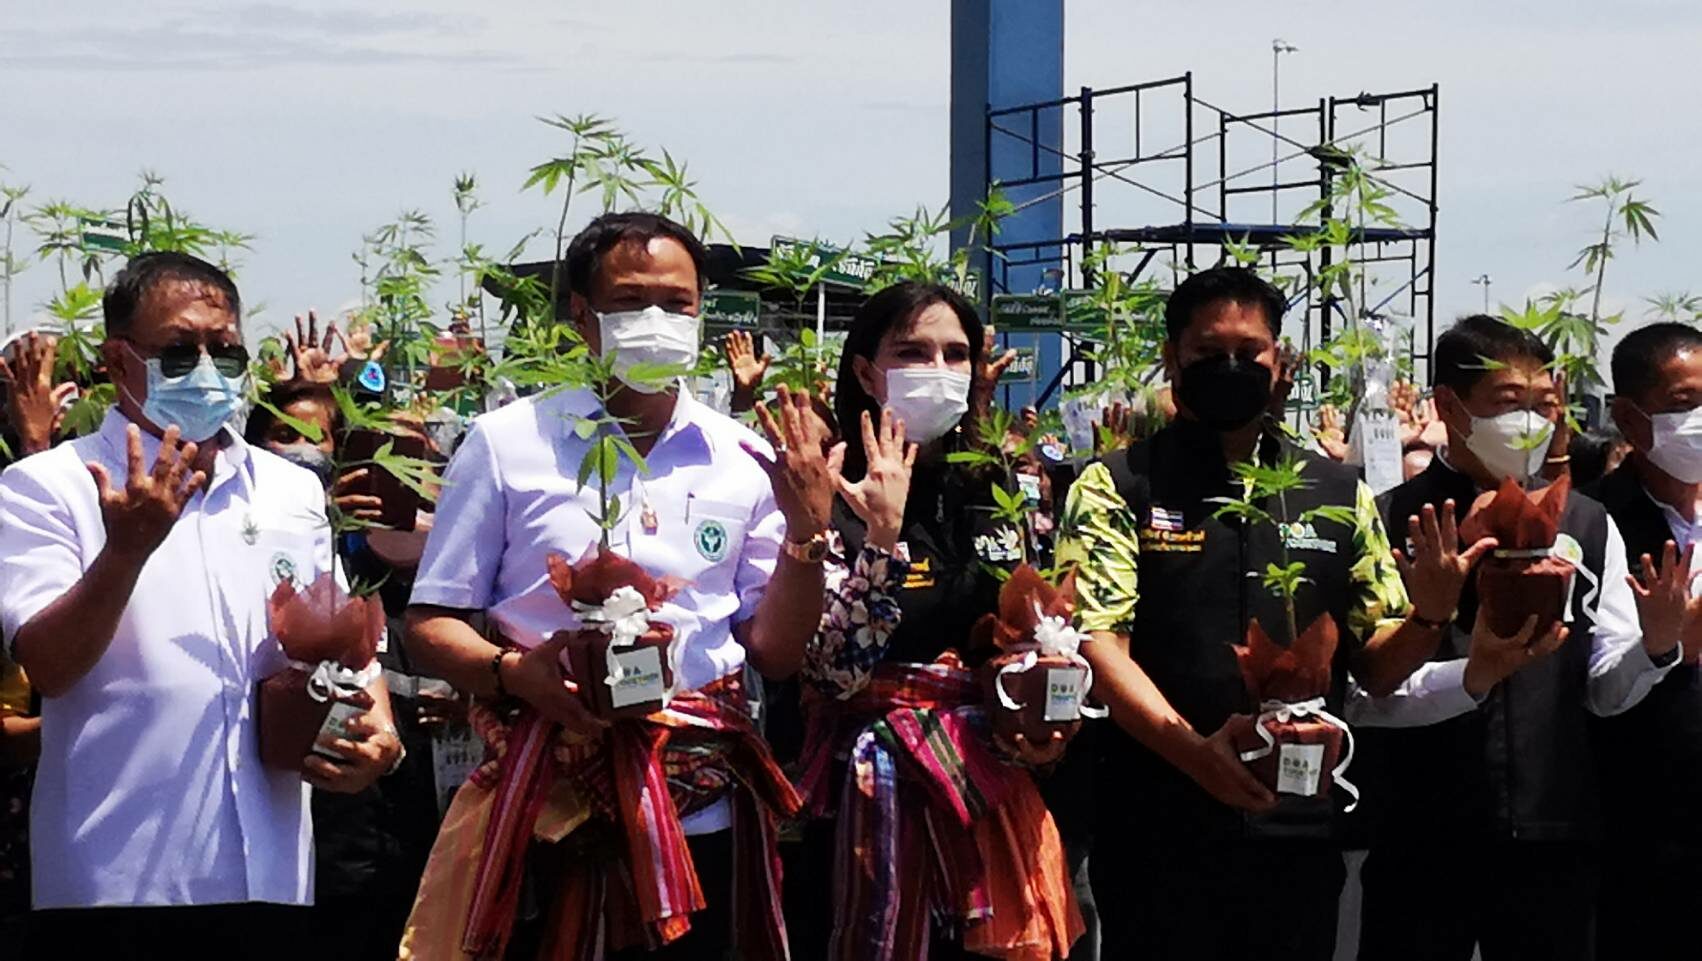 'มนัญญา' มอบ 1,000 ต้นกัญชา 'อนุทิน' ส่งต่อ - ชาวบ้านปลื้มได้ปลูกใช้เอง